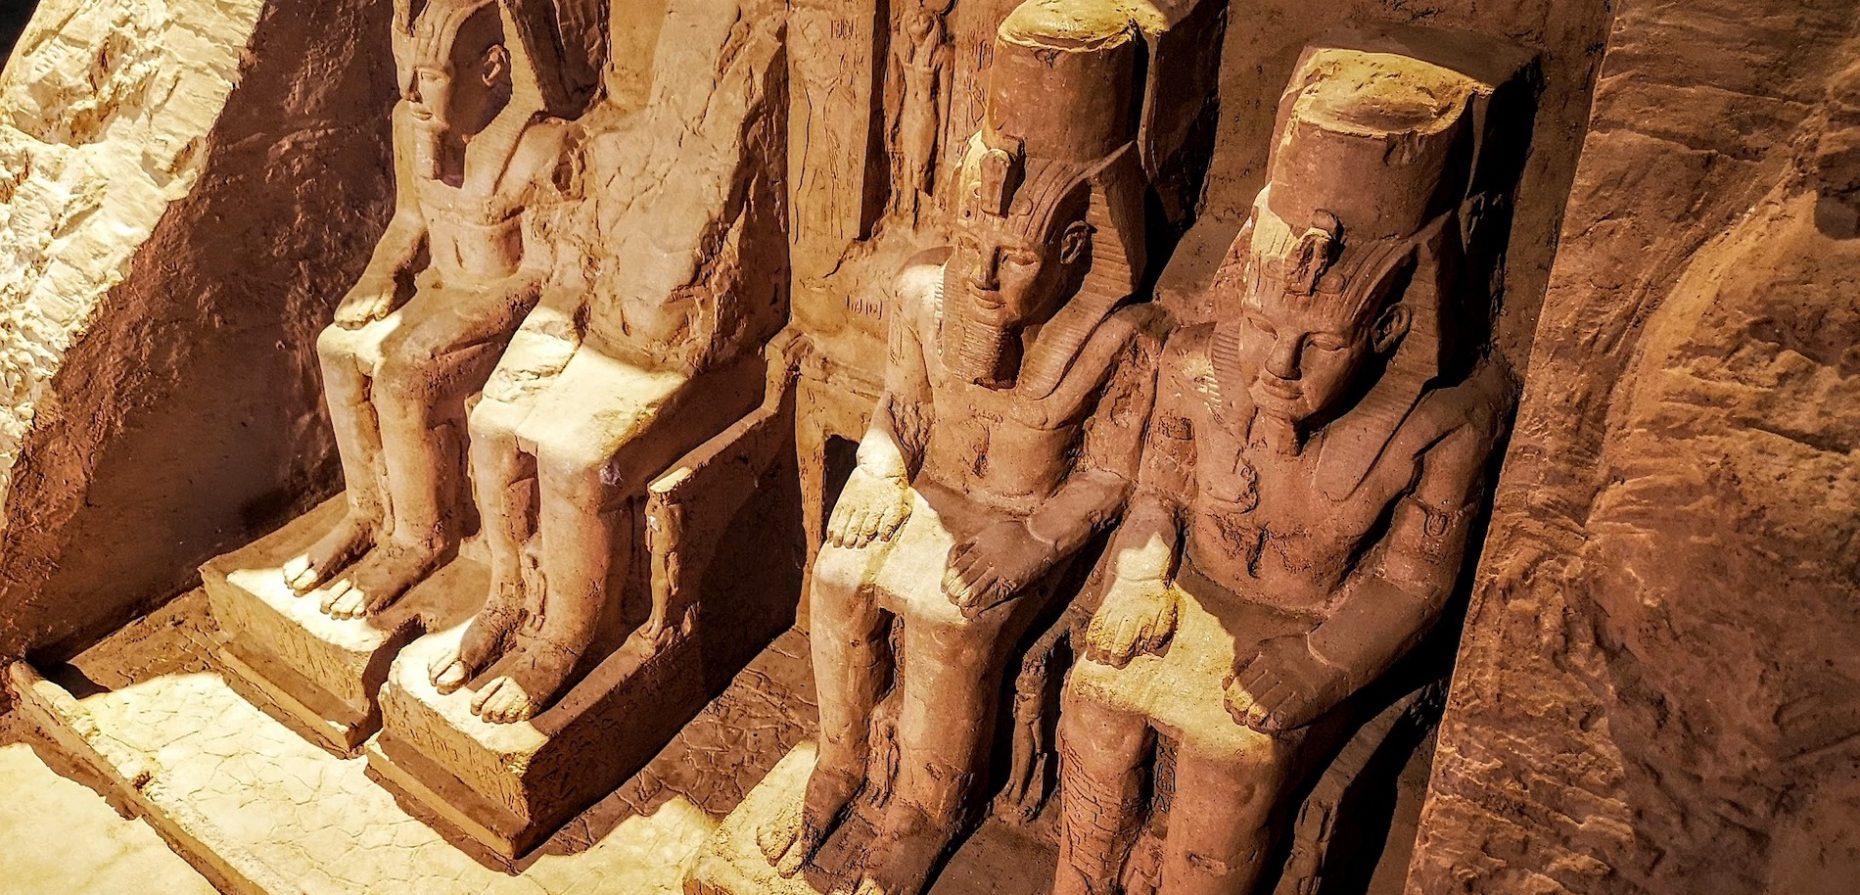 Ewiges Leben war der Plan, Unsterblichkeit in Form eines Ausstellungsstücks die Realität, die sich für Tutanchamun vor 100 Jahren durch Howard Carters Fund ergab. Ein Editorial von Michael Graef.